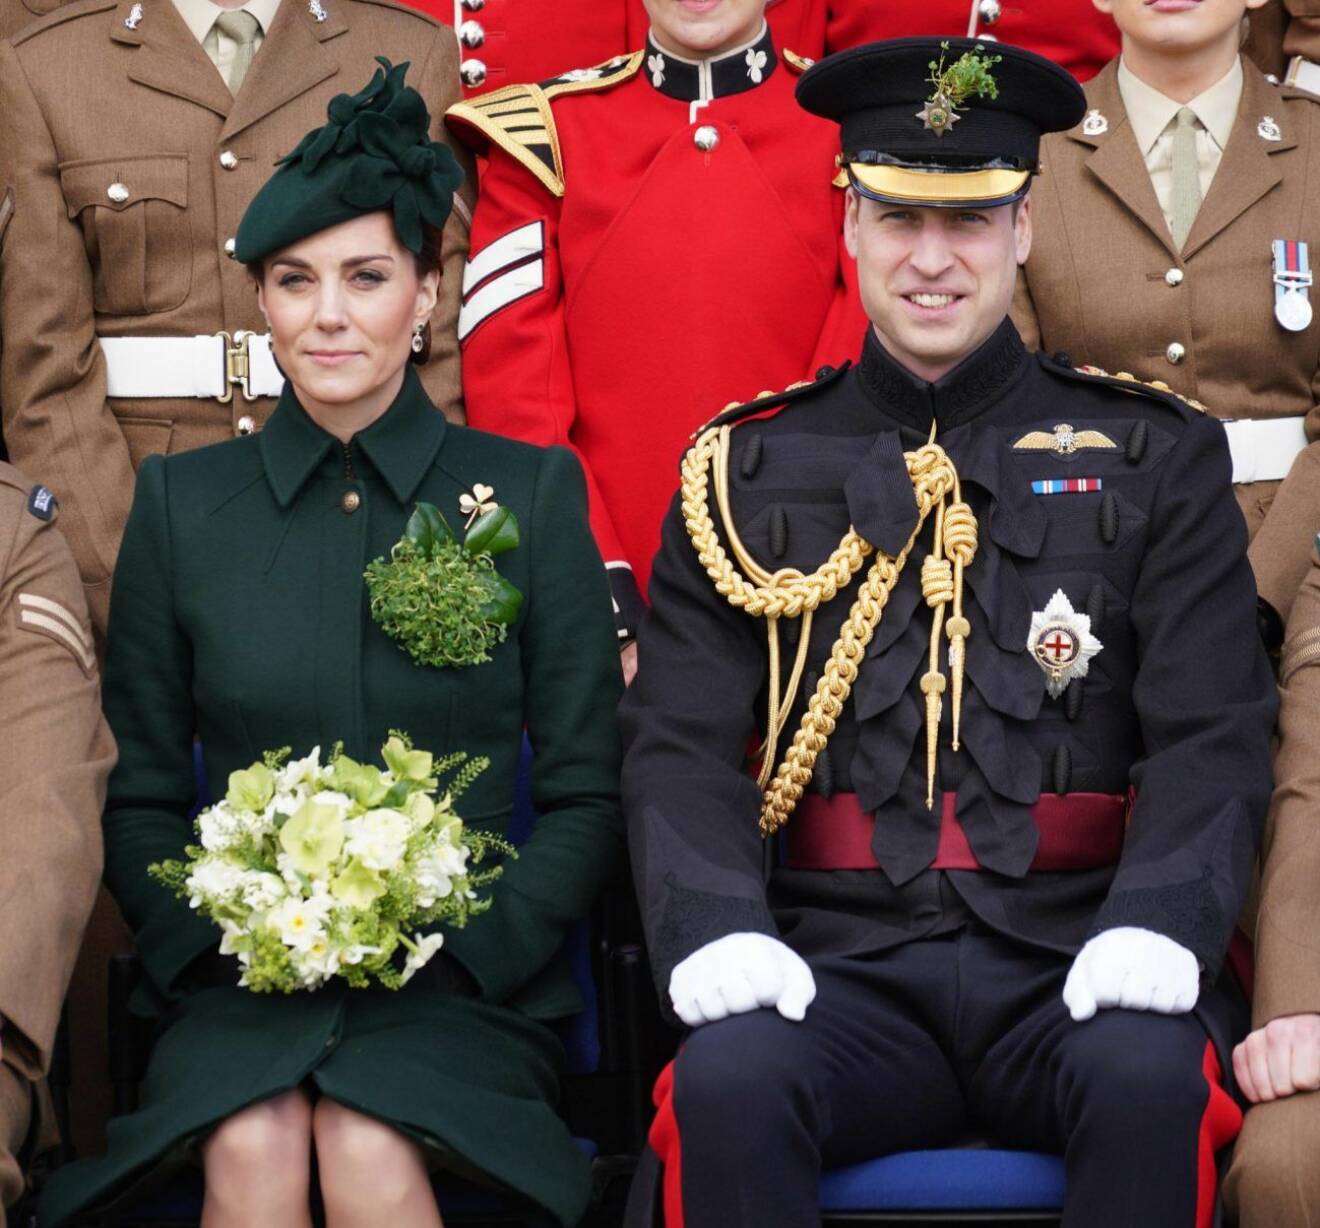 Kate Middleton i klänning med bukett i famnen